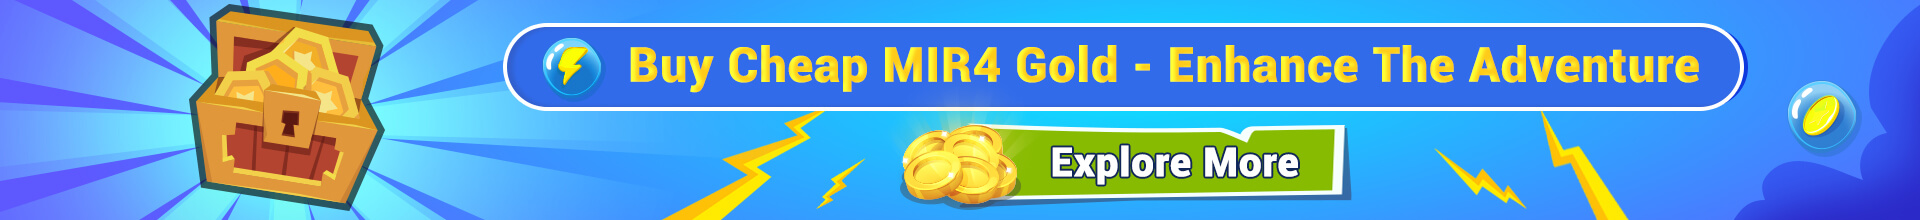 MIR 4 gold banner